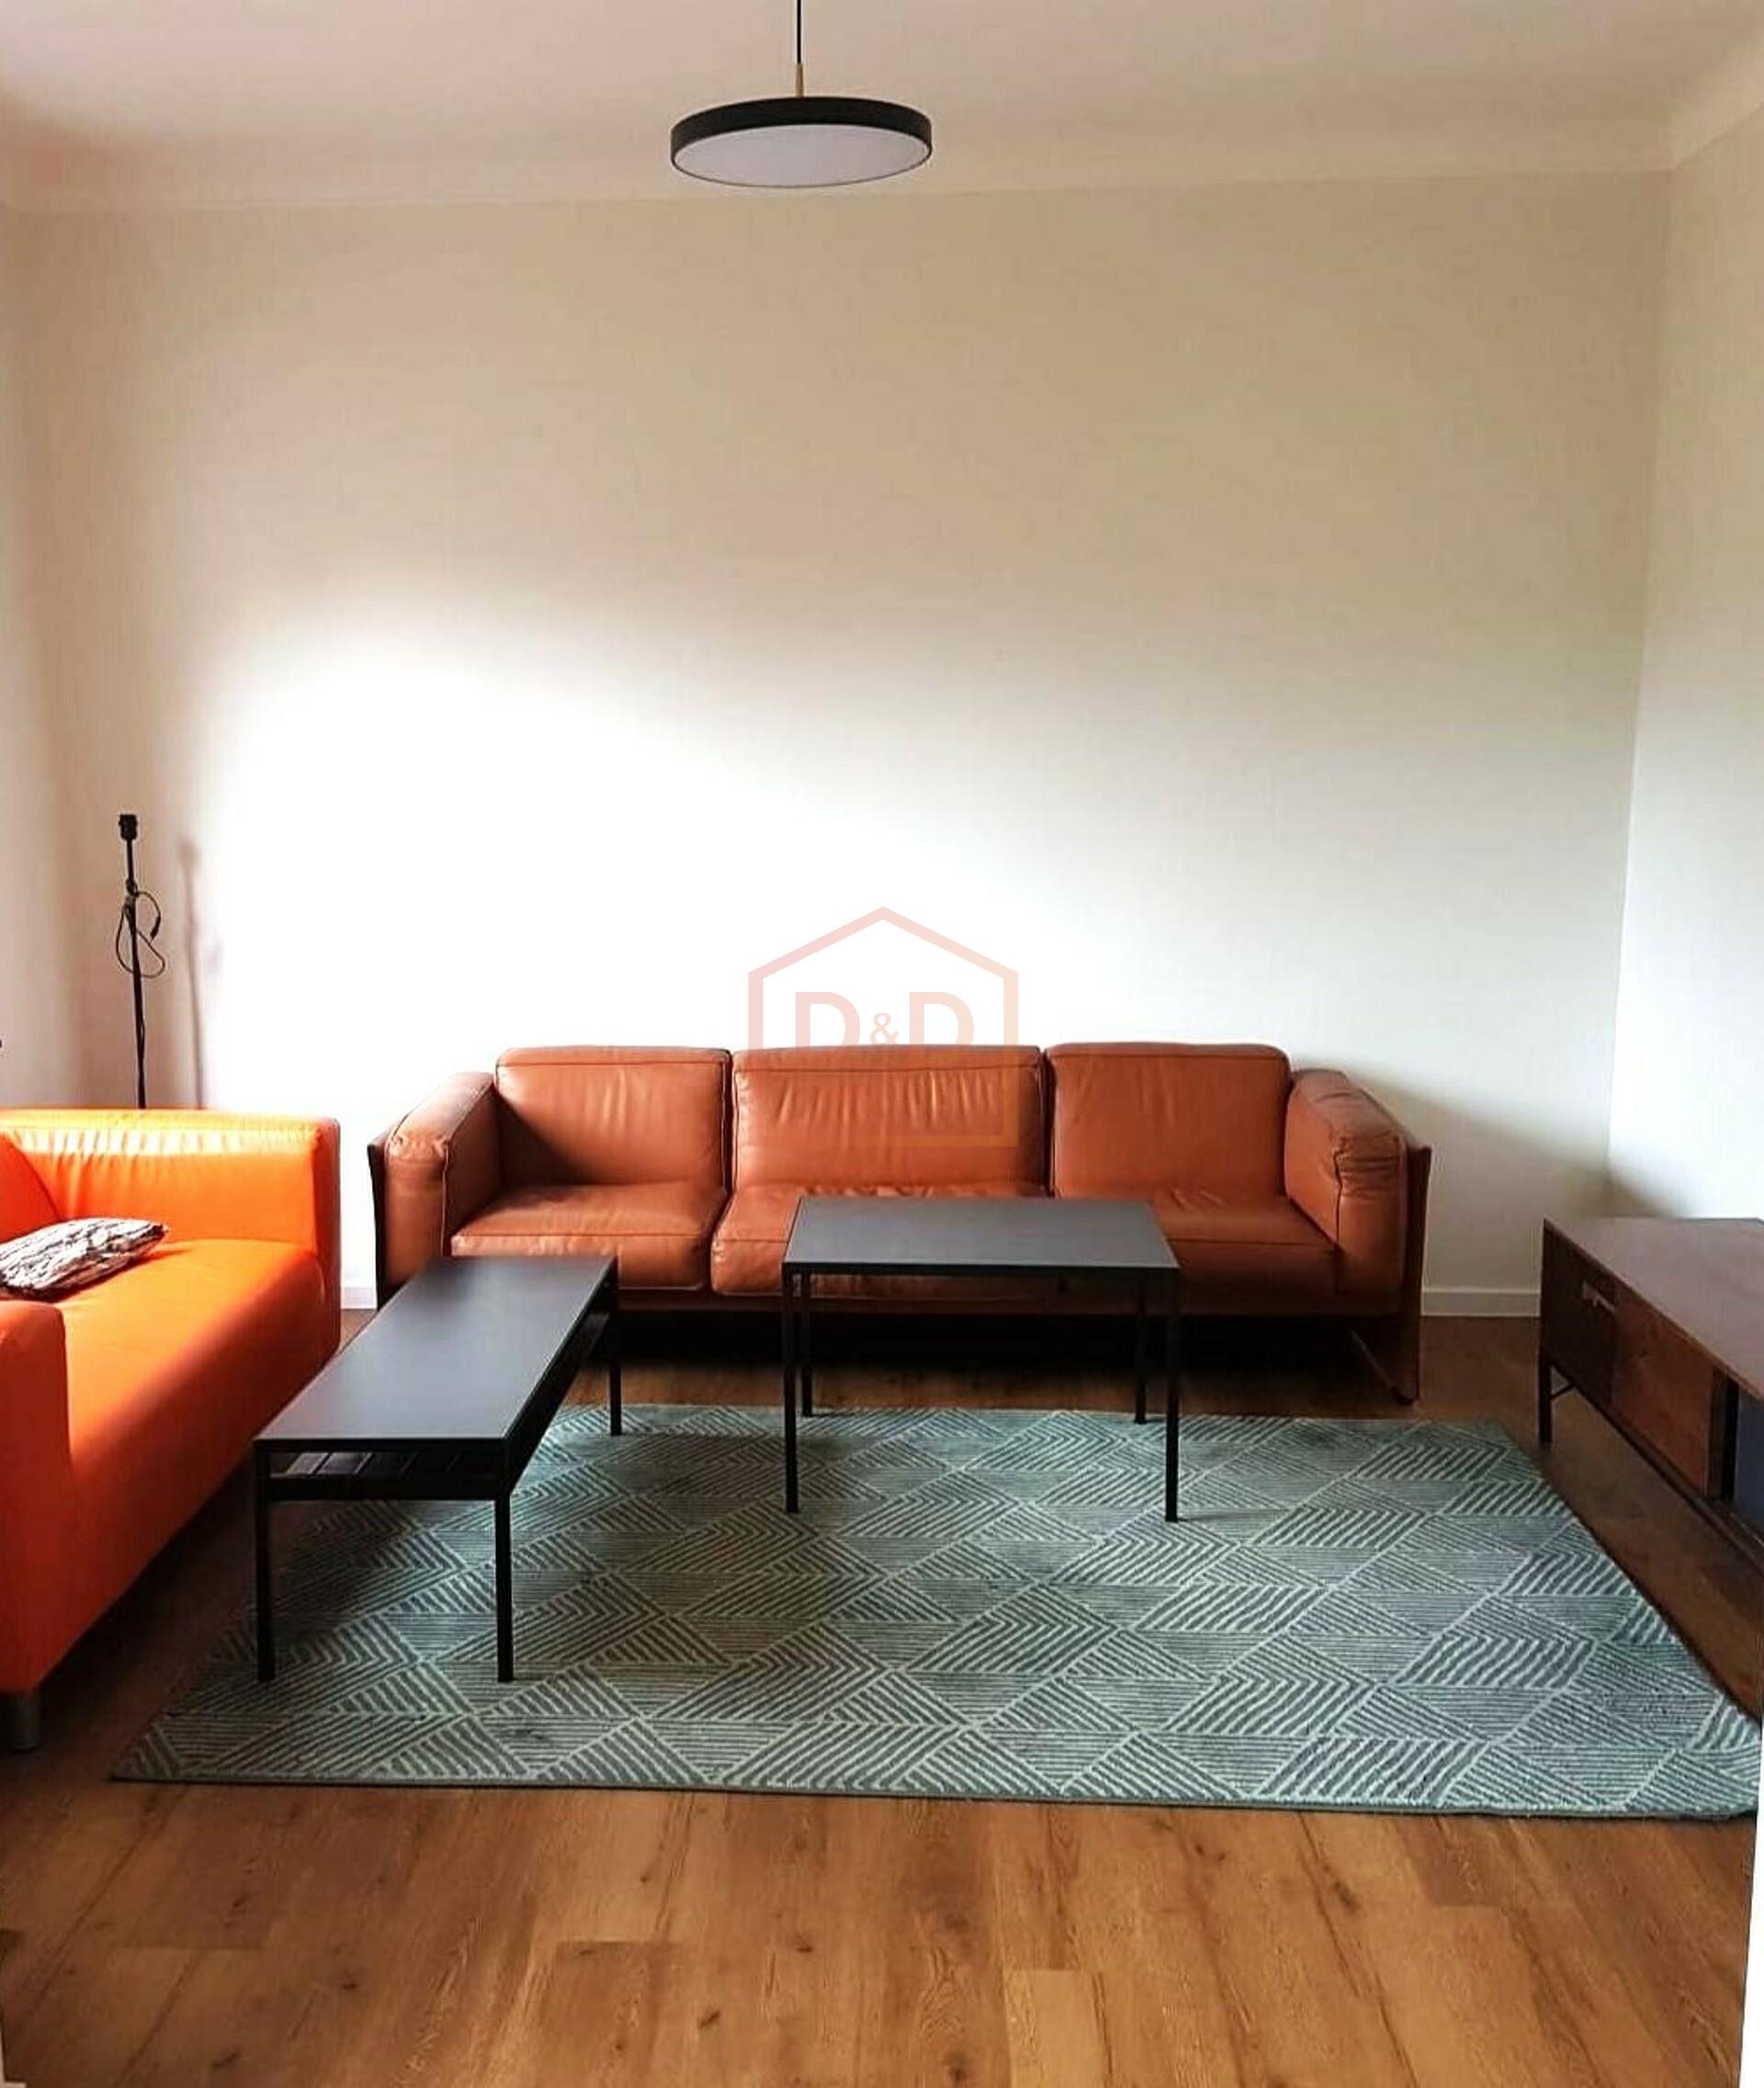 Appartement à Luxembourg-Bonnevoie, 71,13 m², 2 chambres, 1 garage, 2 000 €/mois